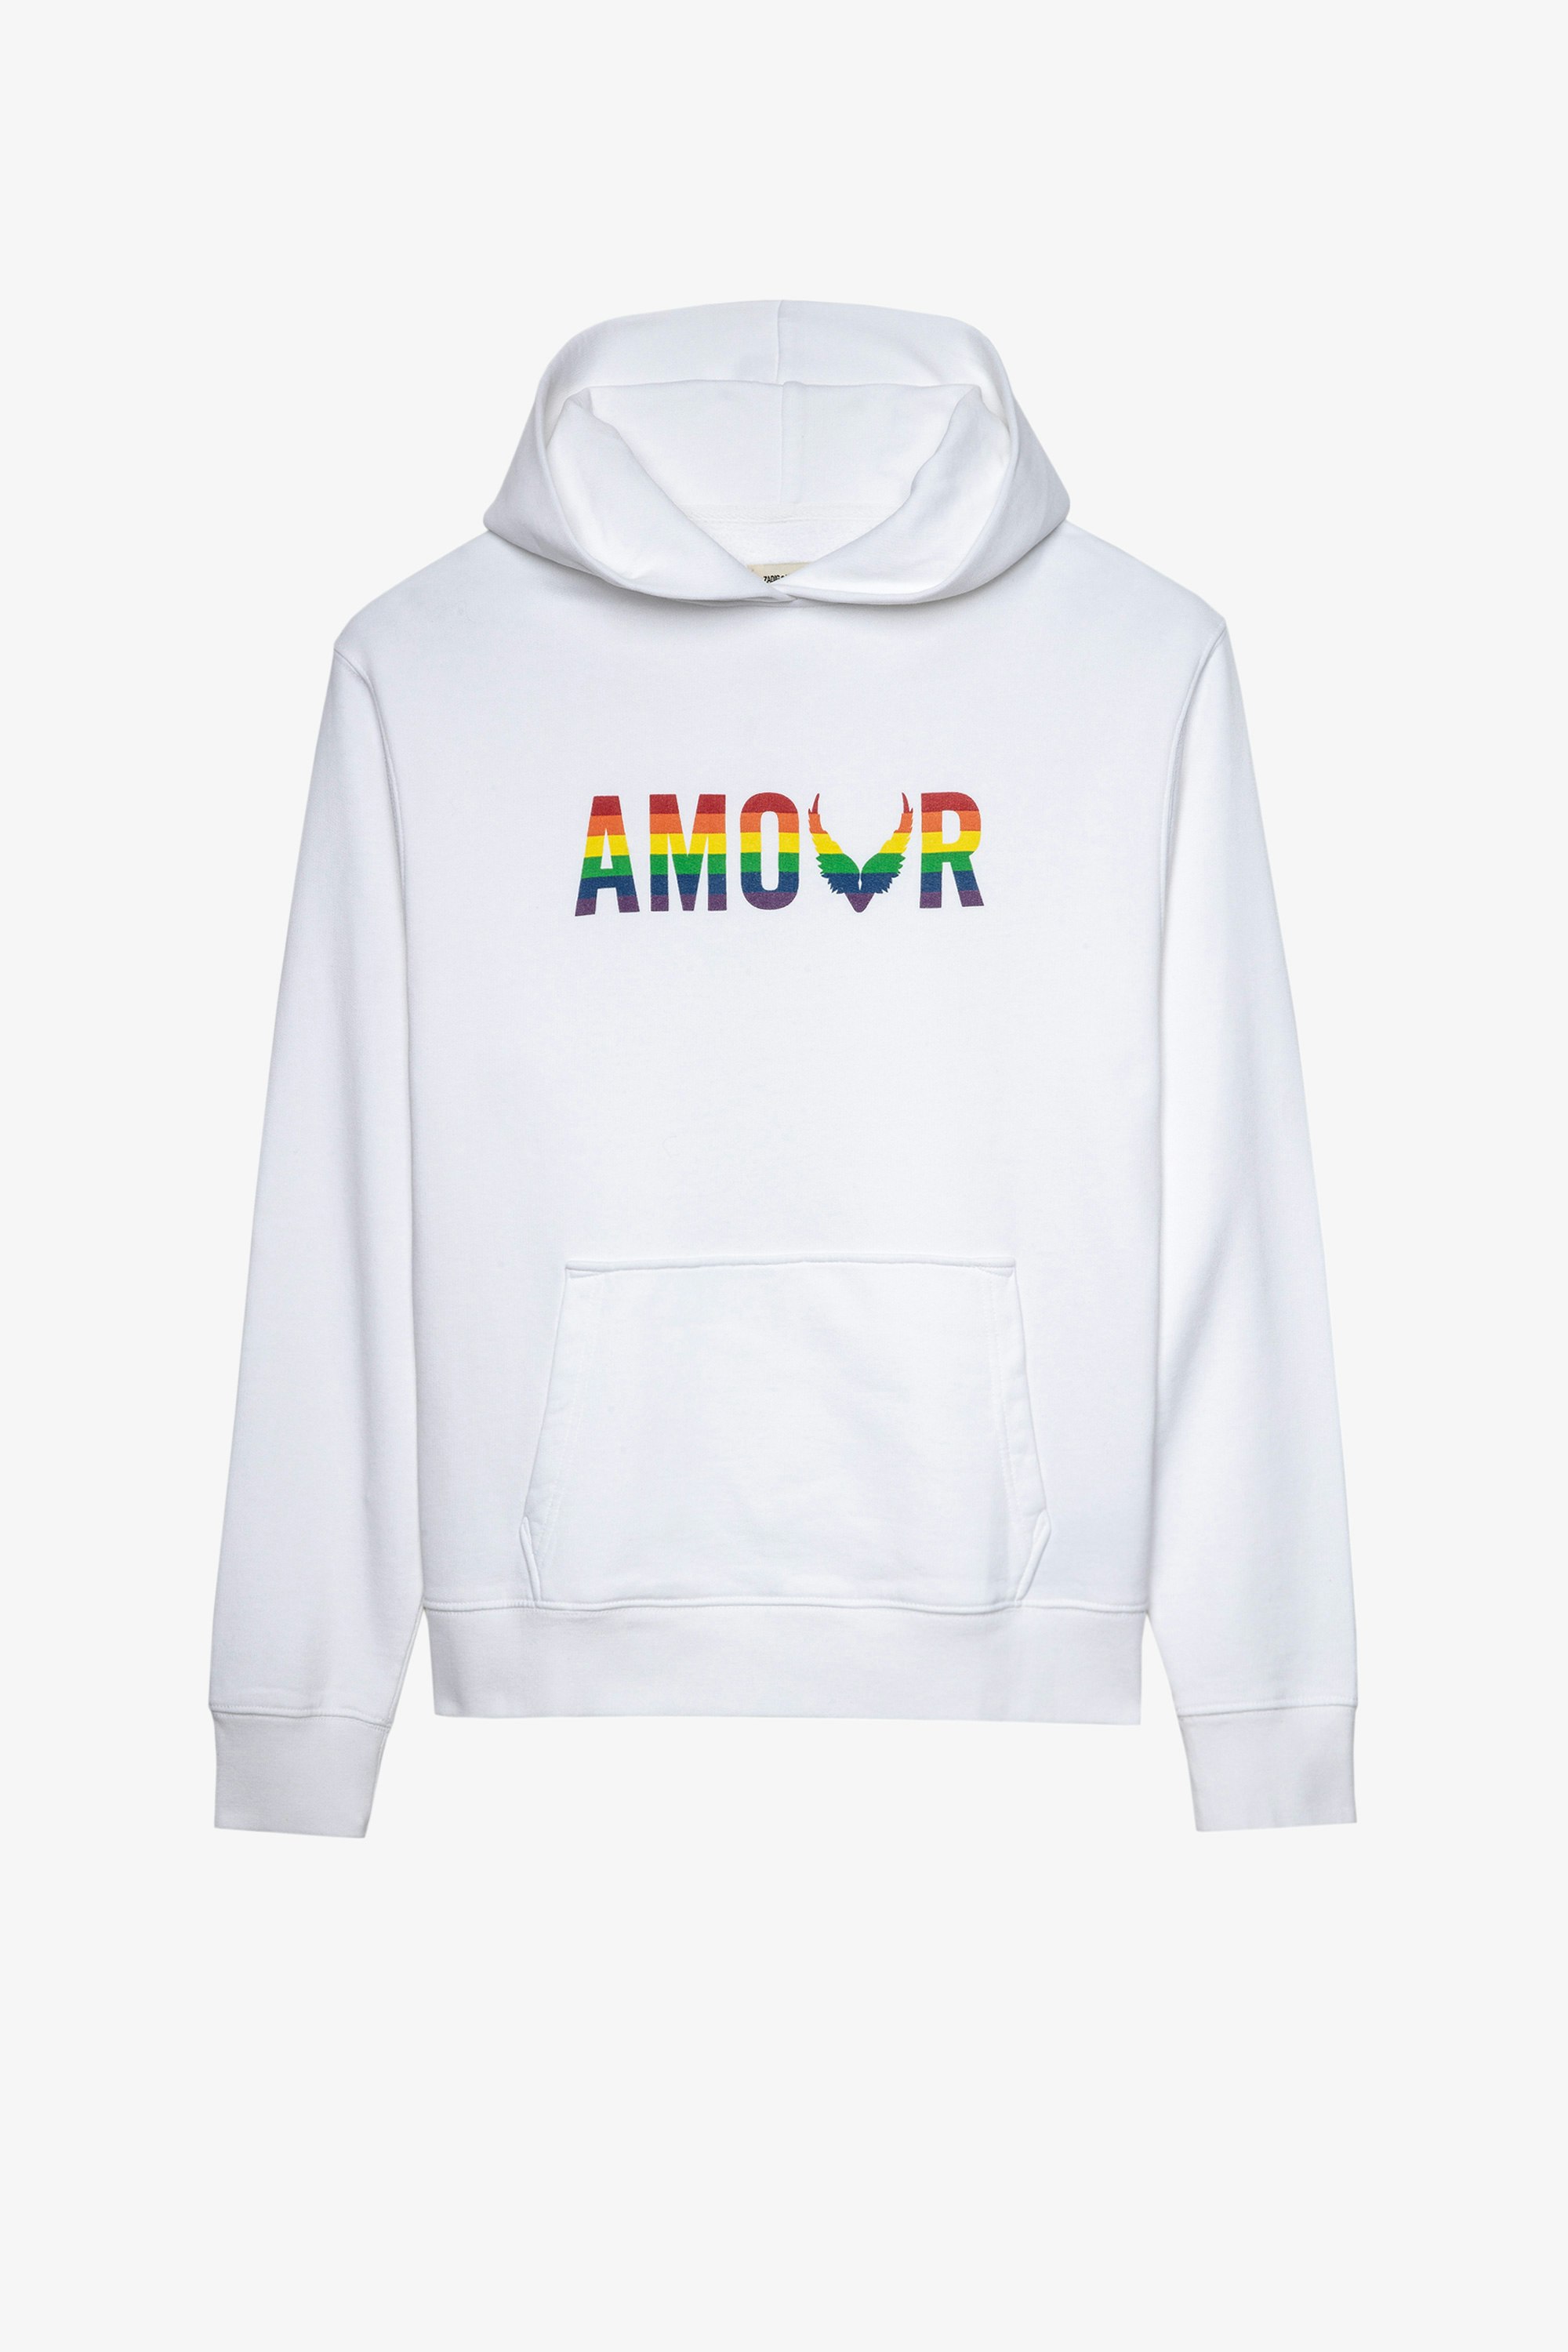 Sweatshirt Sanchi Amour Wings Sweatshirt à capuche en coton blanc imprimé Amour multicolore Femme